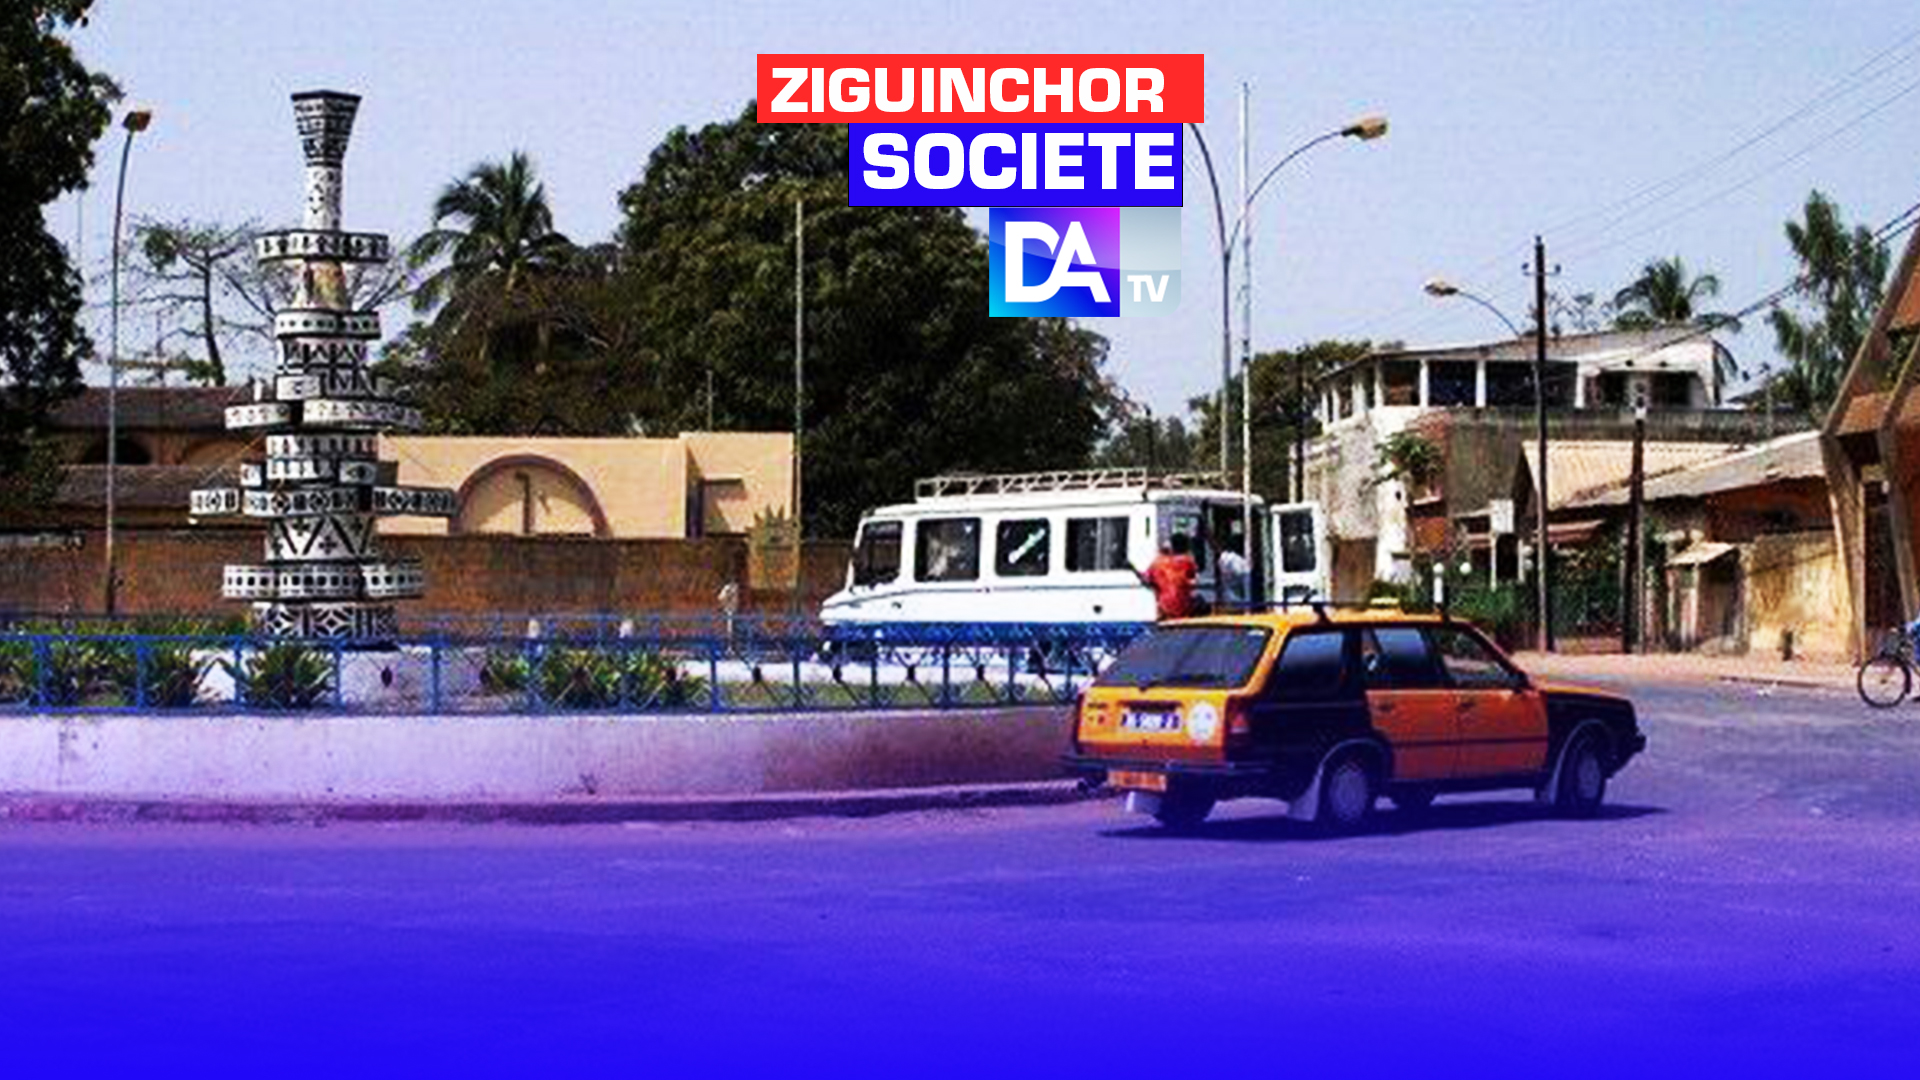 Sénégal: la Cour suprême invalide la rebaptisation de certaines rues de Ziguinchor